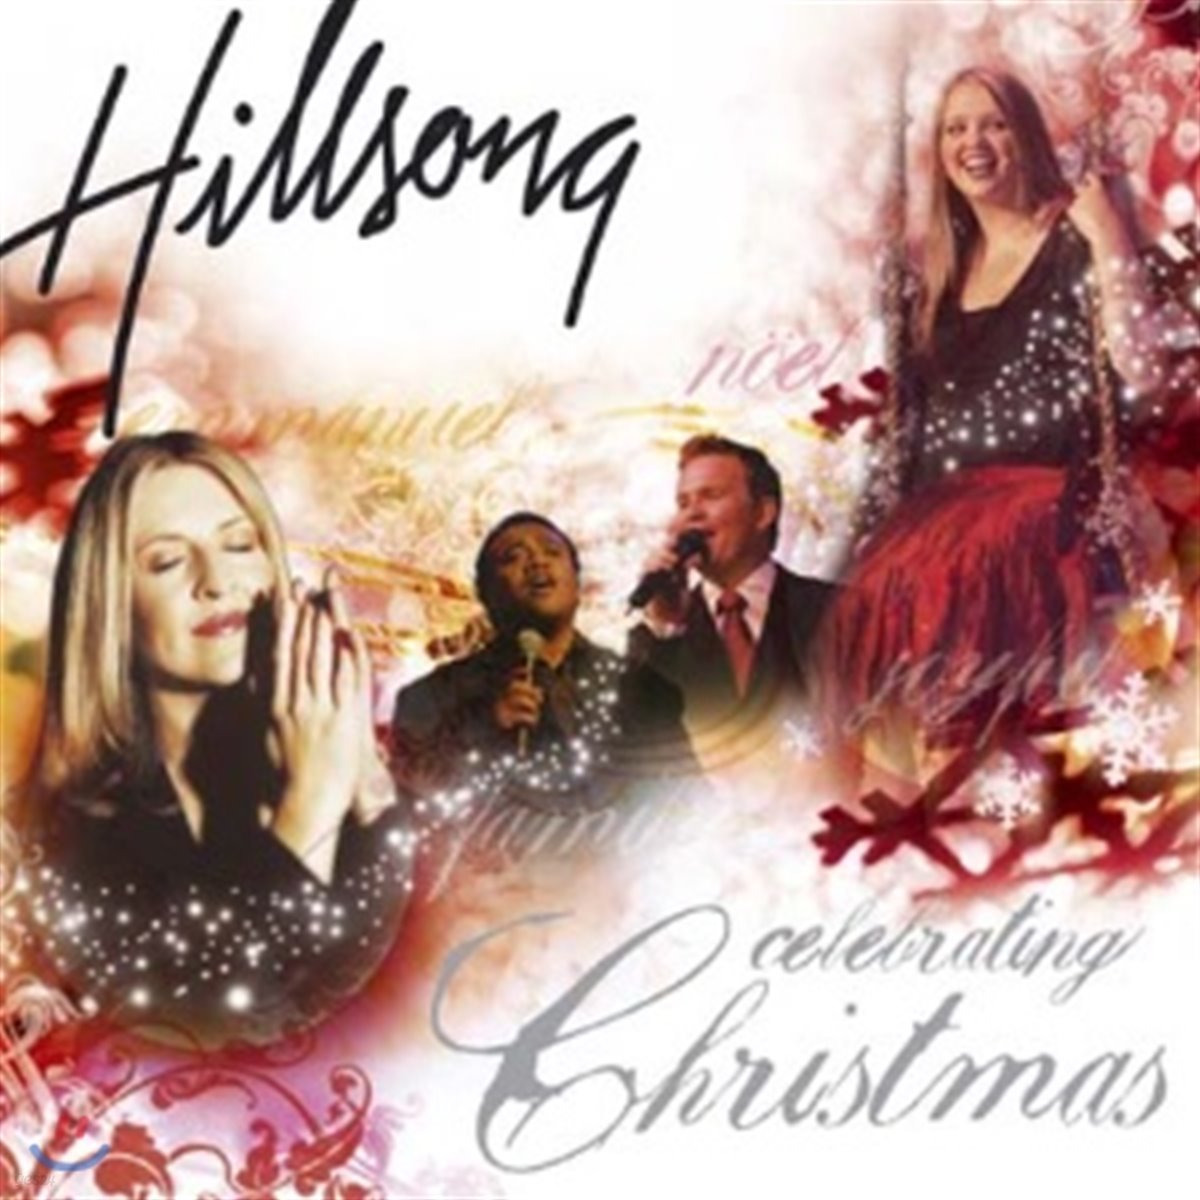 Hillsong Christmas - Celebrating Christmas 힐송 크리스마스